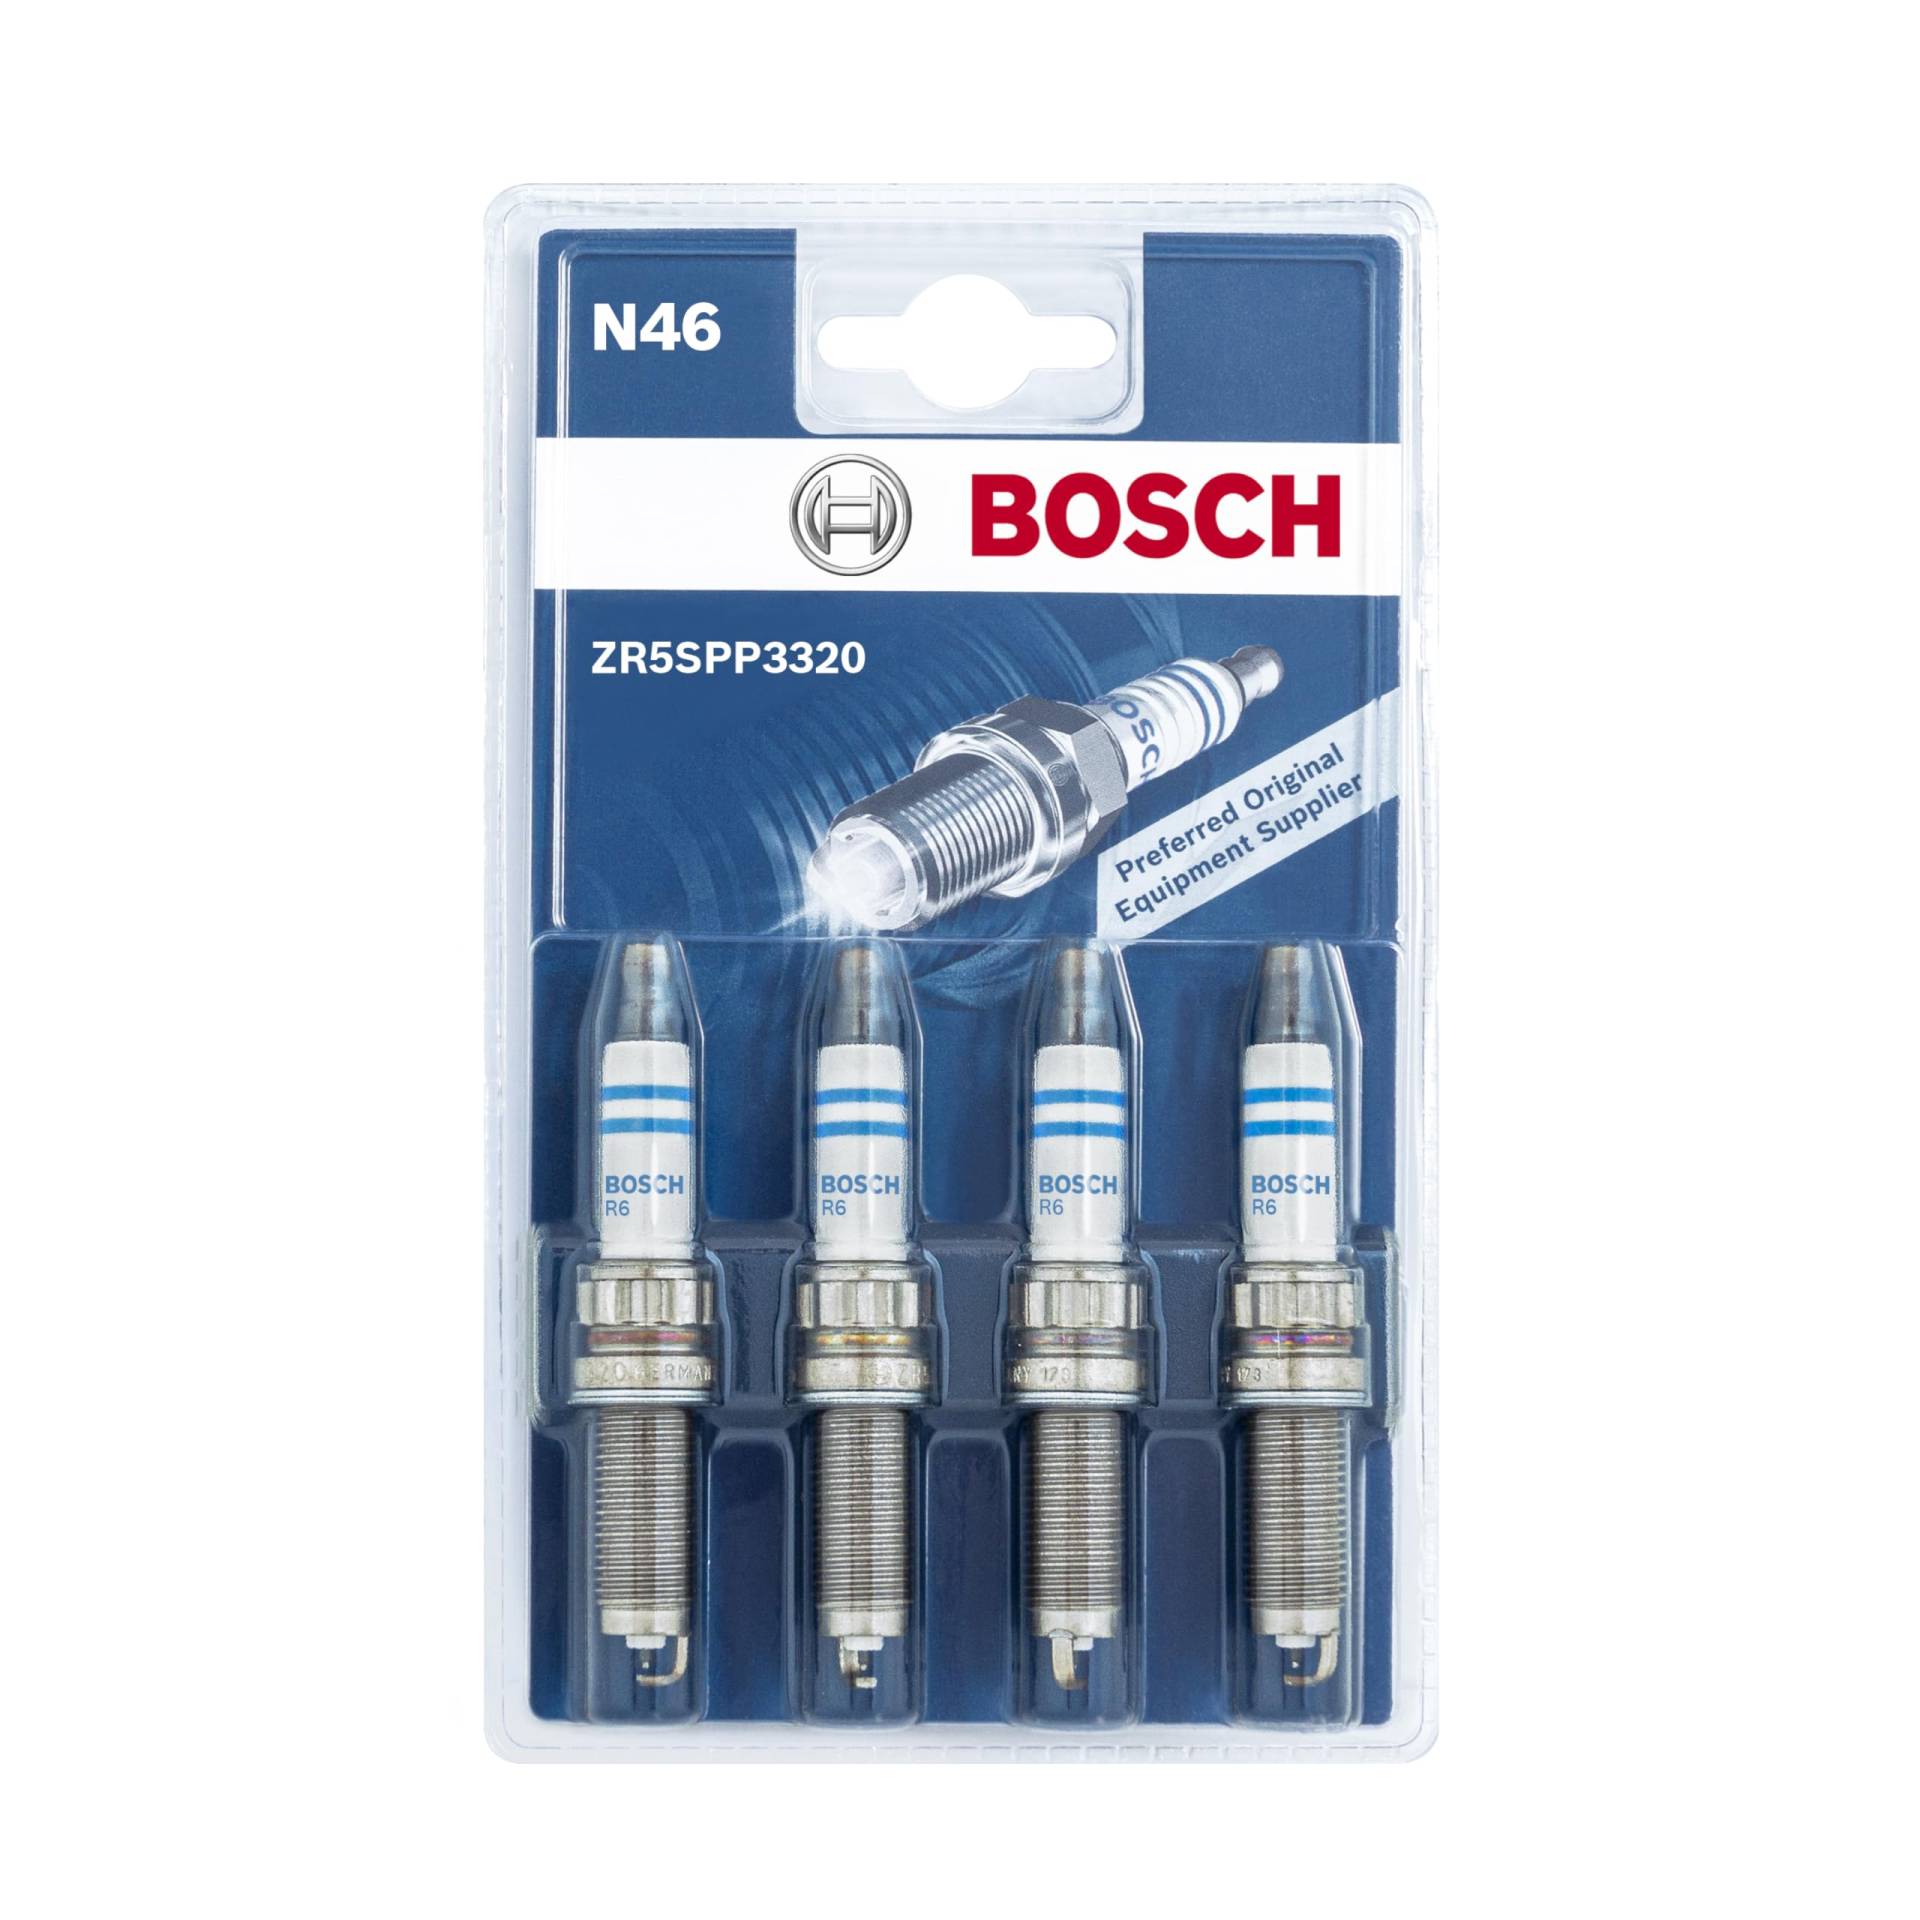 Bosch ZR5SPP3320 (N46) - Zündkerzen Double Platinum - 4er Set von Bosch Automotive